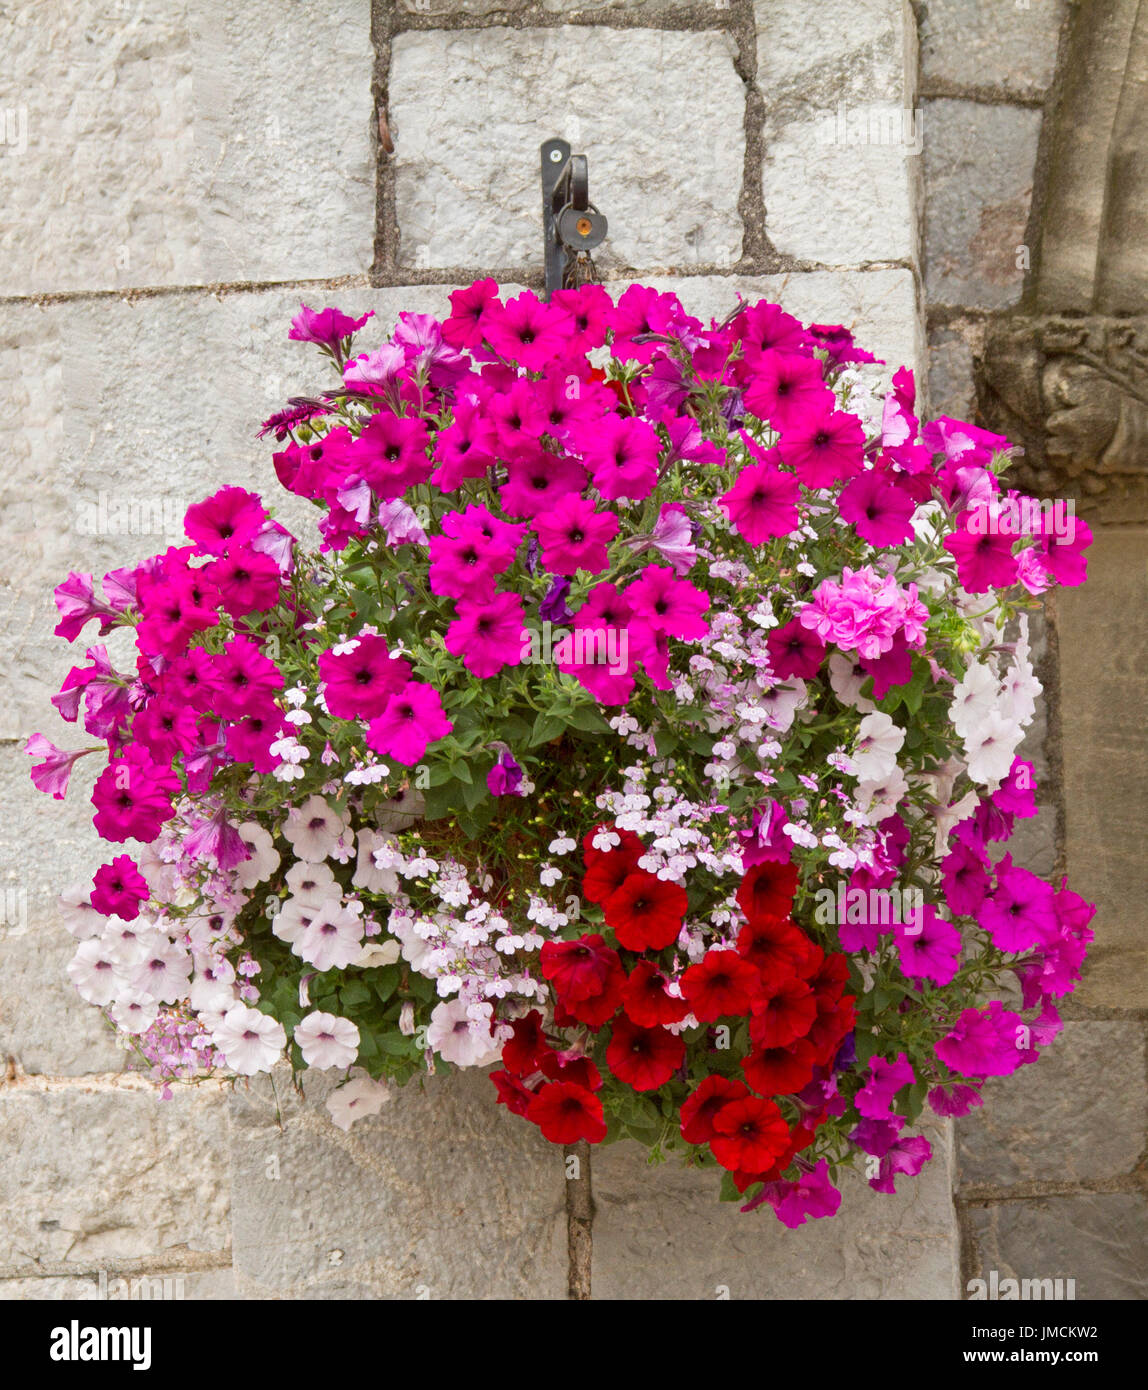 Spettacolare cesta appesa di vividi fiori, inc rosso, rosa luminoso e bianco nelle petunie e rosa pallido fiori lobelia contro la luce colorata parete in pietra Foto Stock